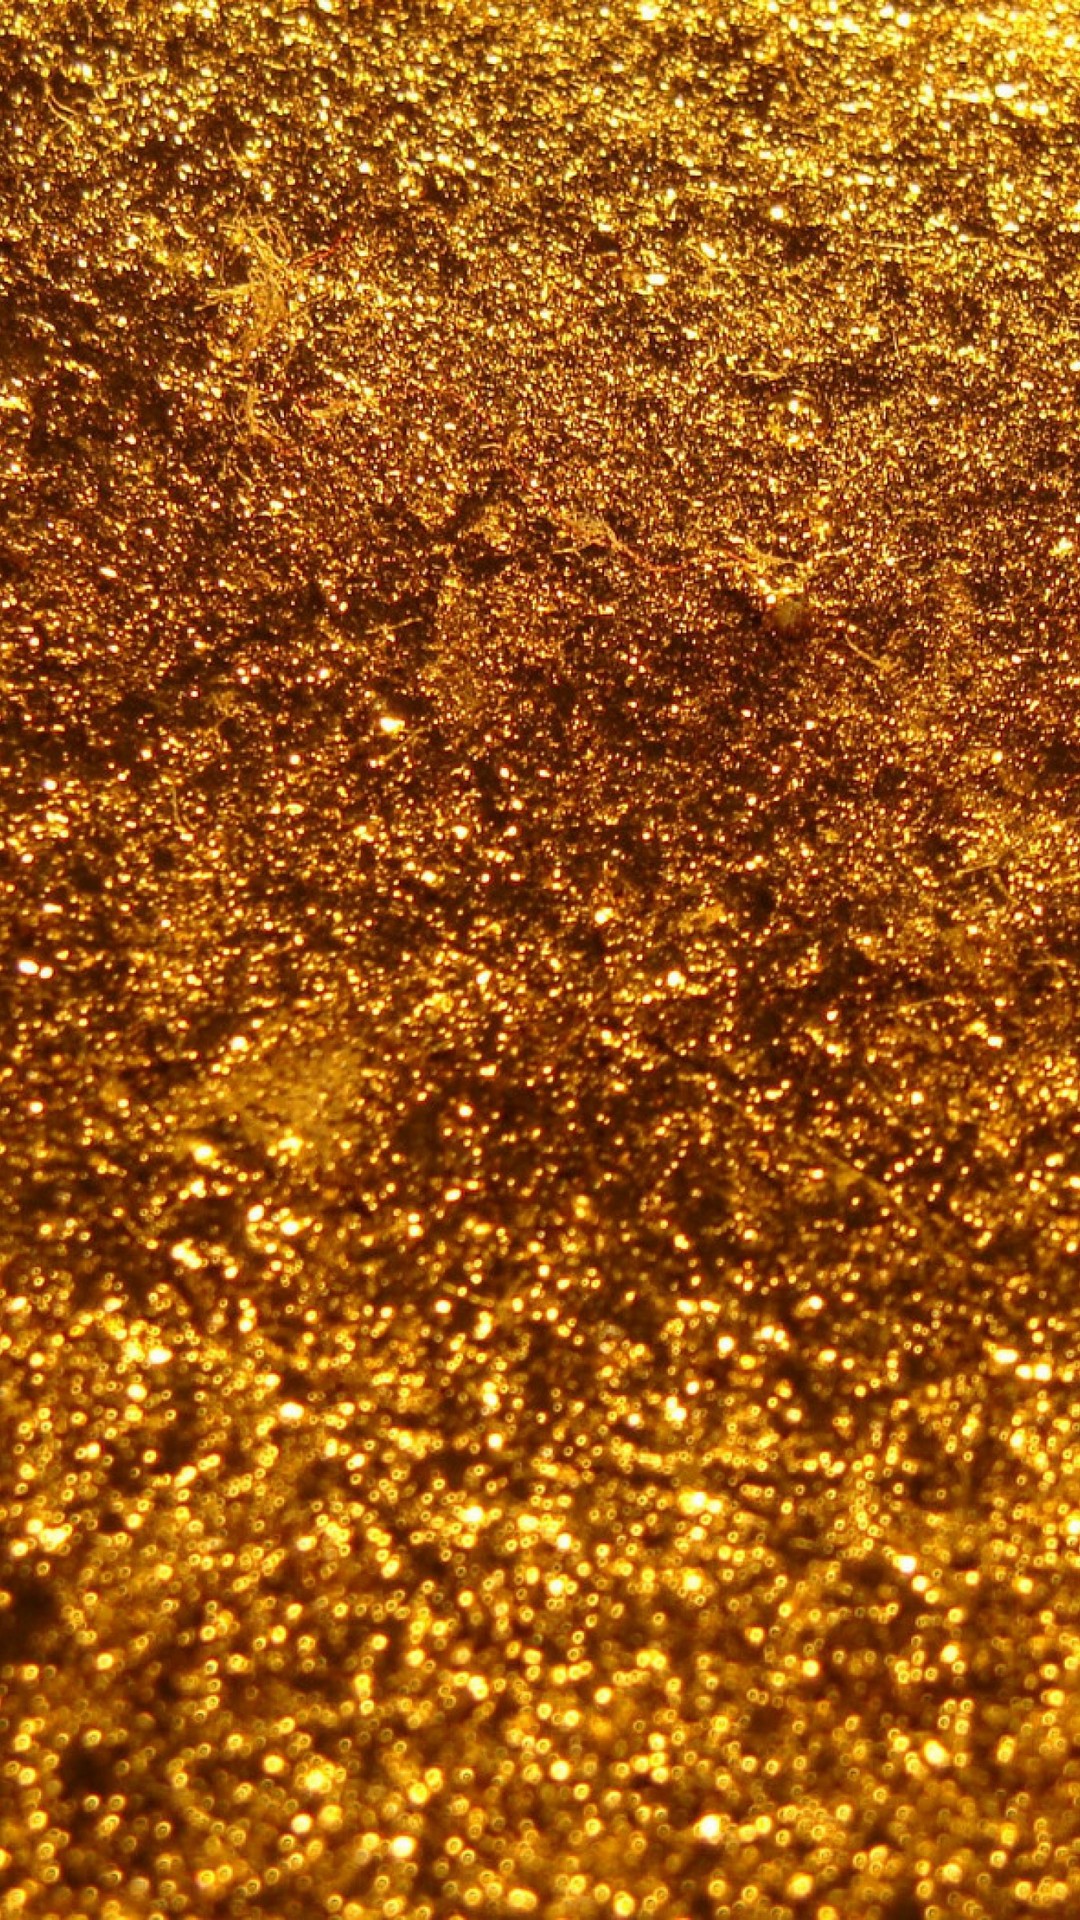 iPhone X Wallpaper Gold Glitter resolution 1080x1920